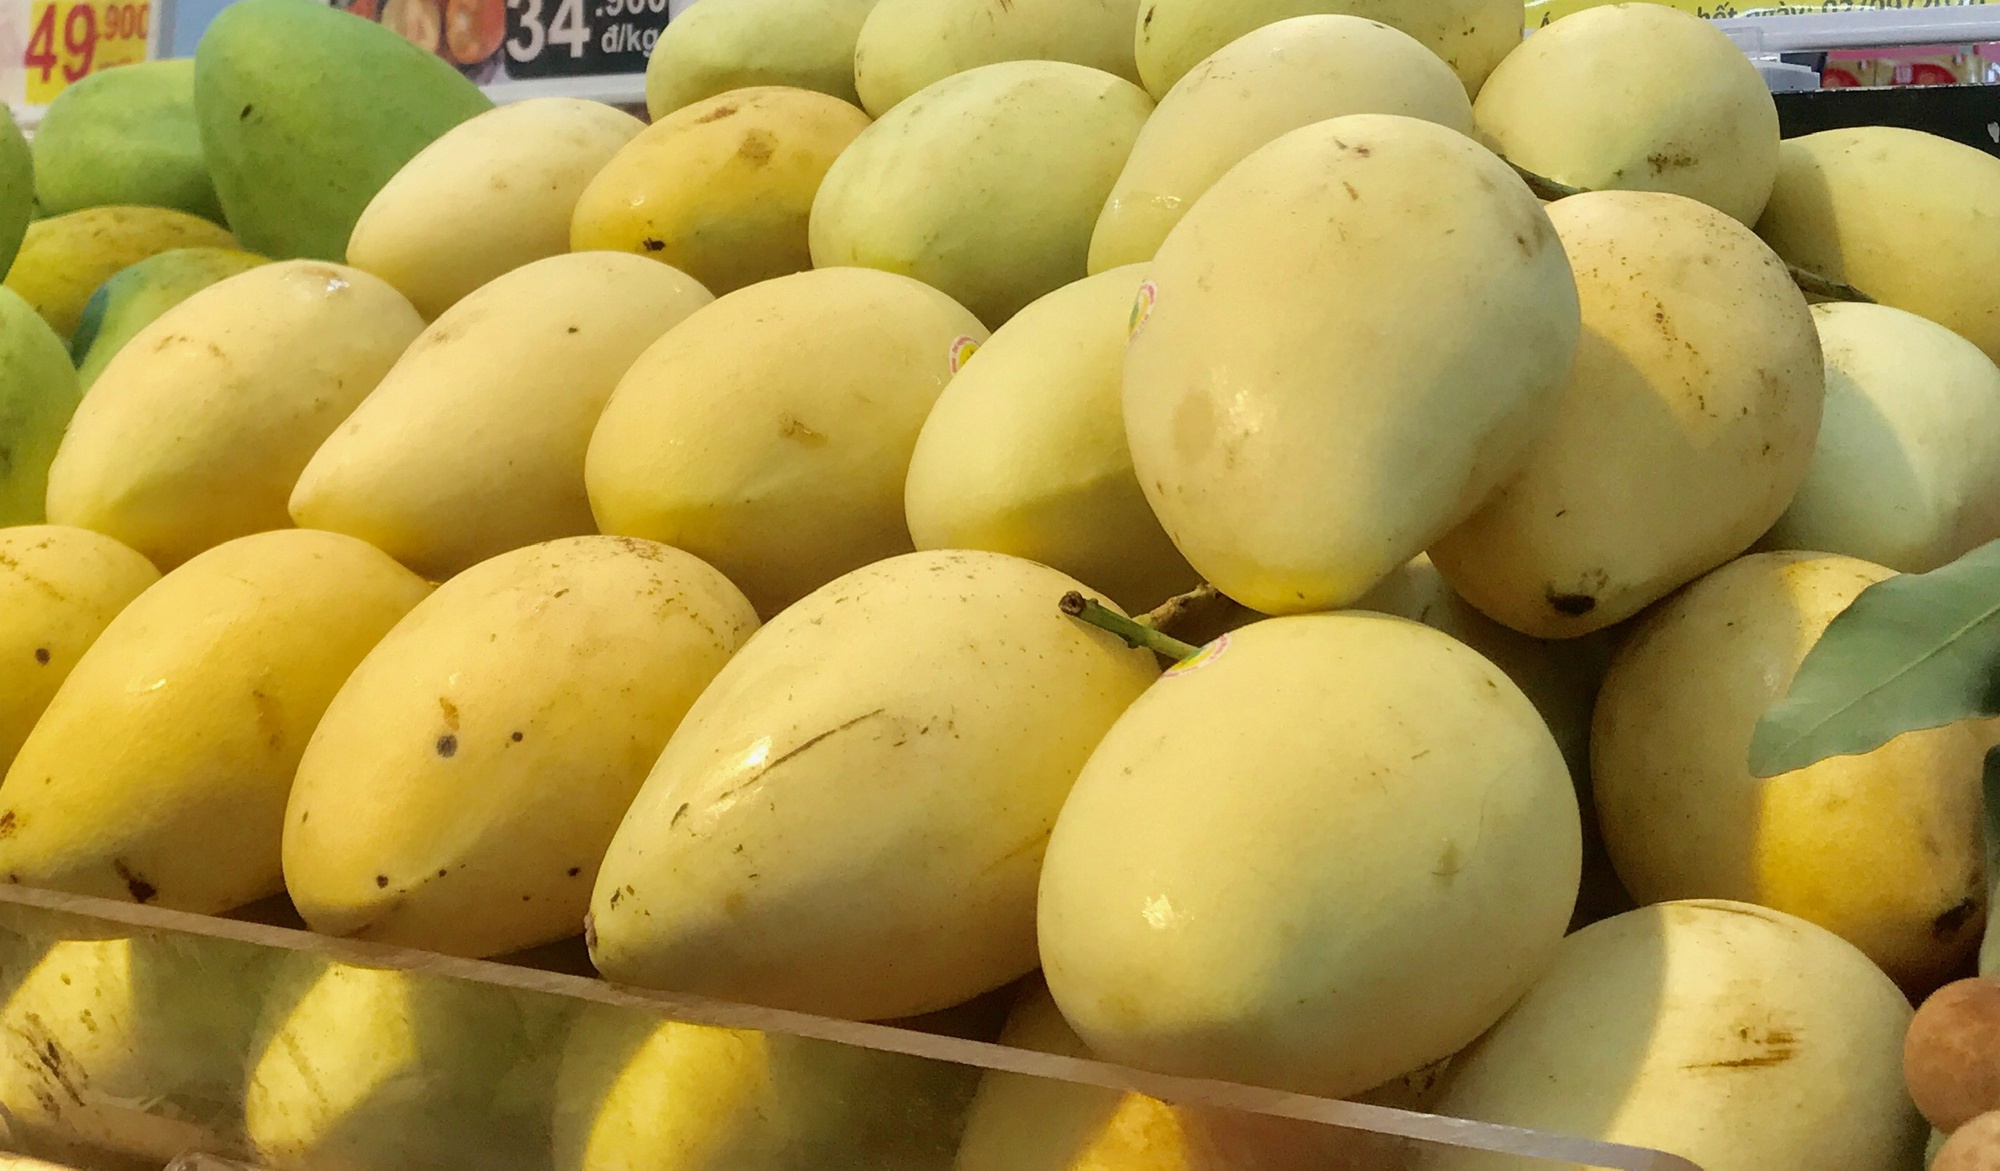 Hàn Quốc thích một loại trái cây của Việt Nam nhưng doanh nghiệp xuất khẩu phải đặc biệt chú ý điều này - Ảnh 1.